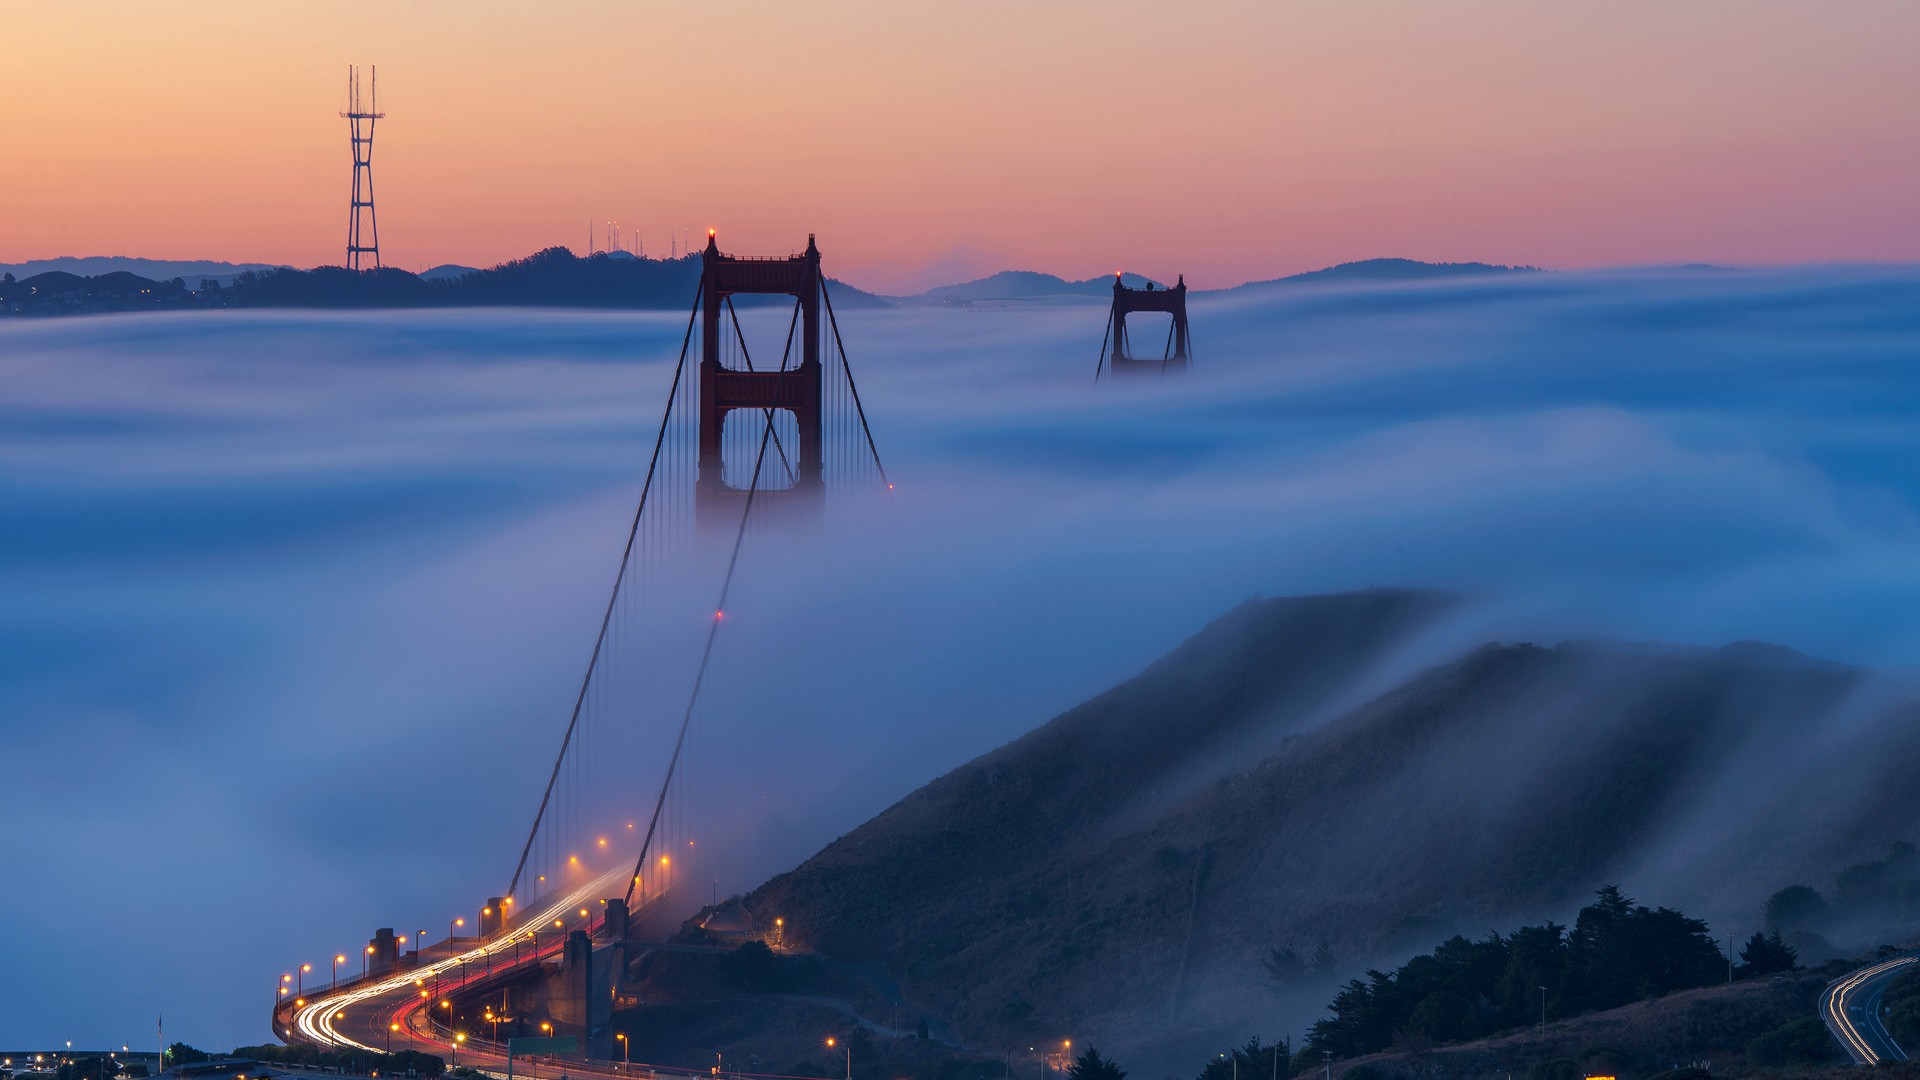 General 1920x1080 San Francisco Golden Gate Bridge mist landscape long exposure architecture road lights suspension bridge bridge USA